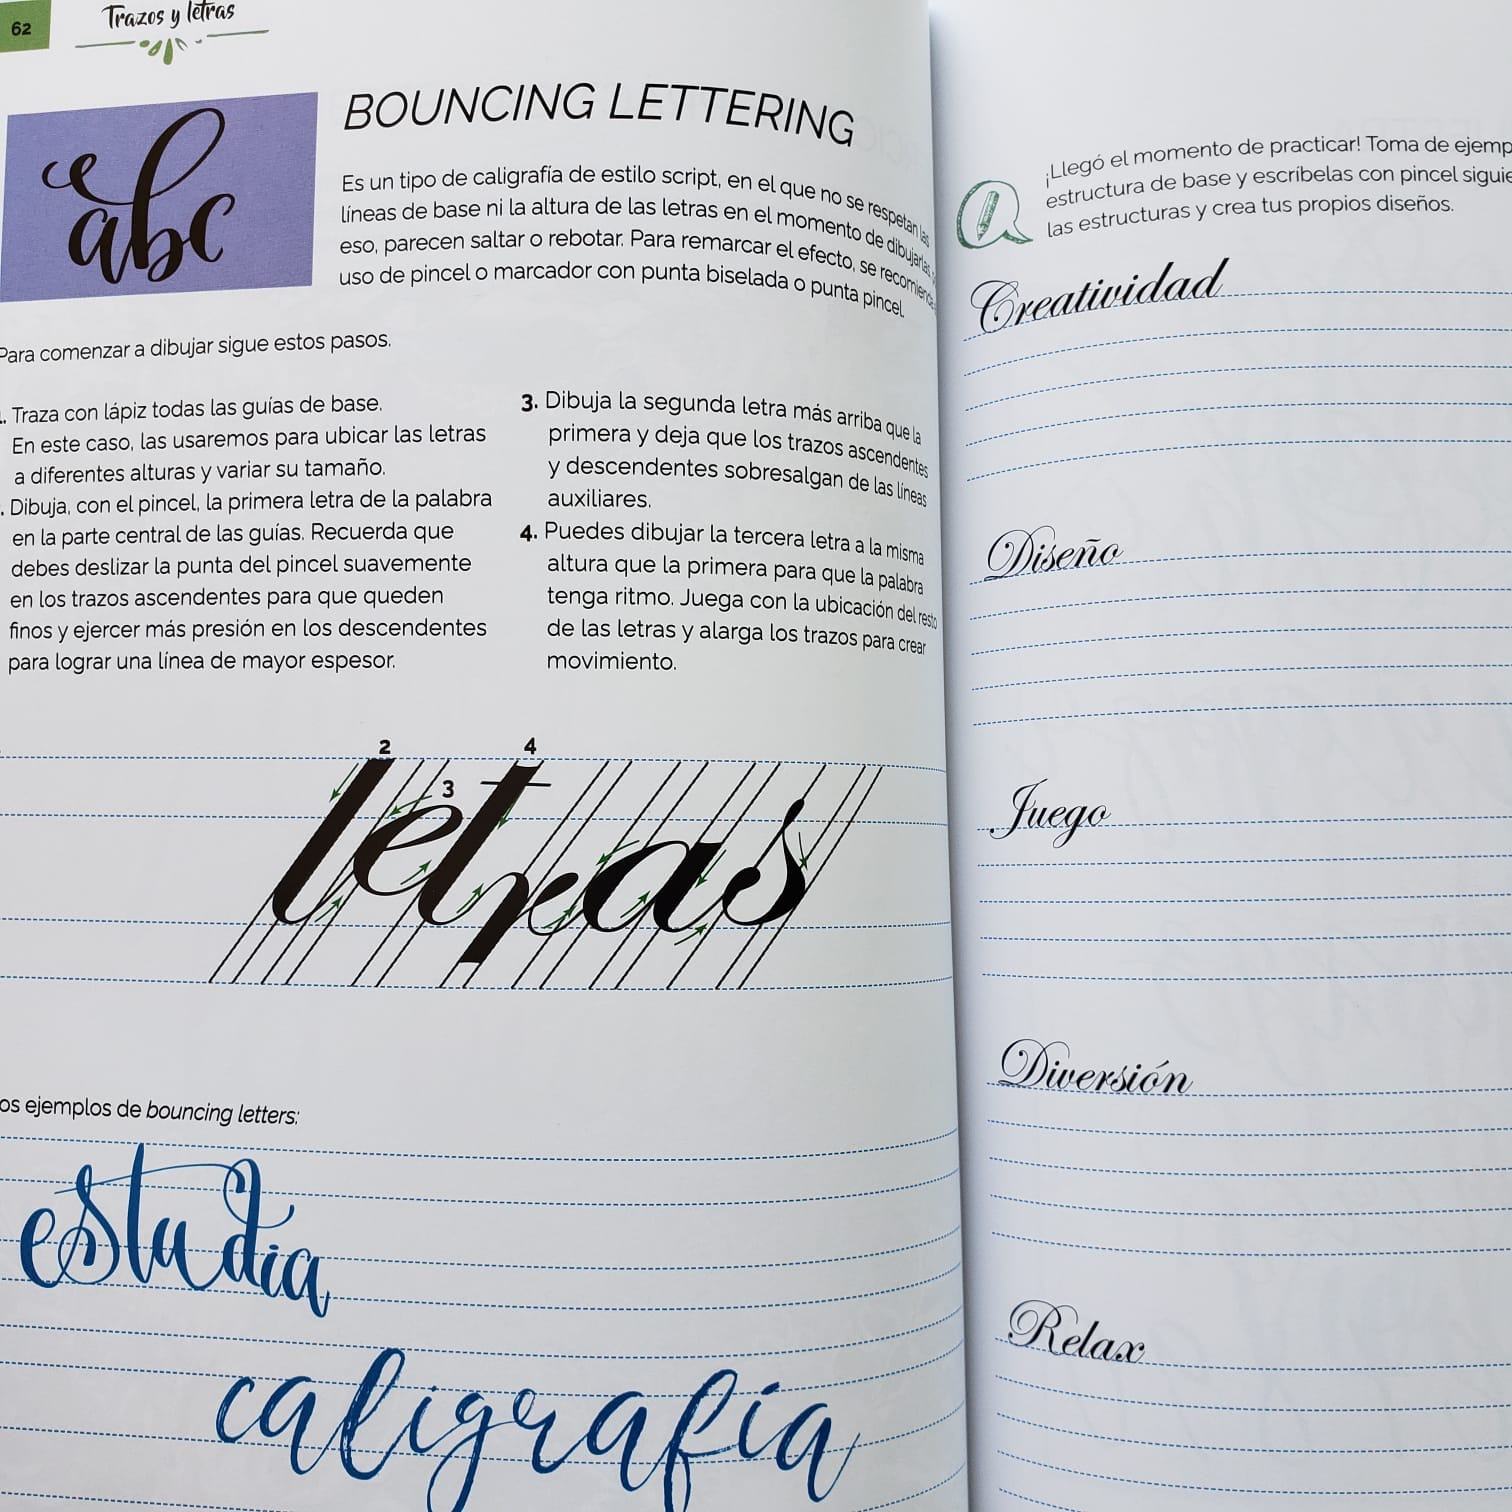 Libro Lettering Para Niños - Dibujo Y Actividades + Lápices